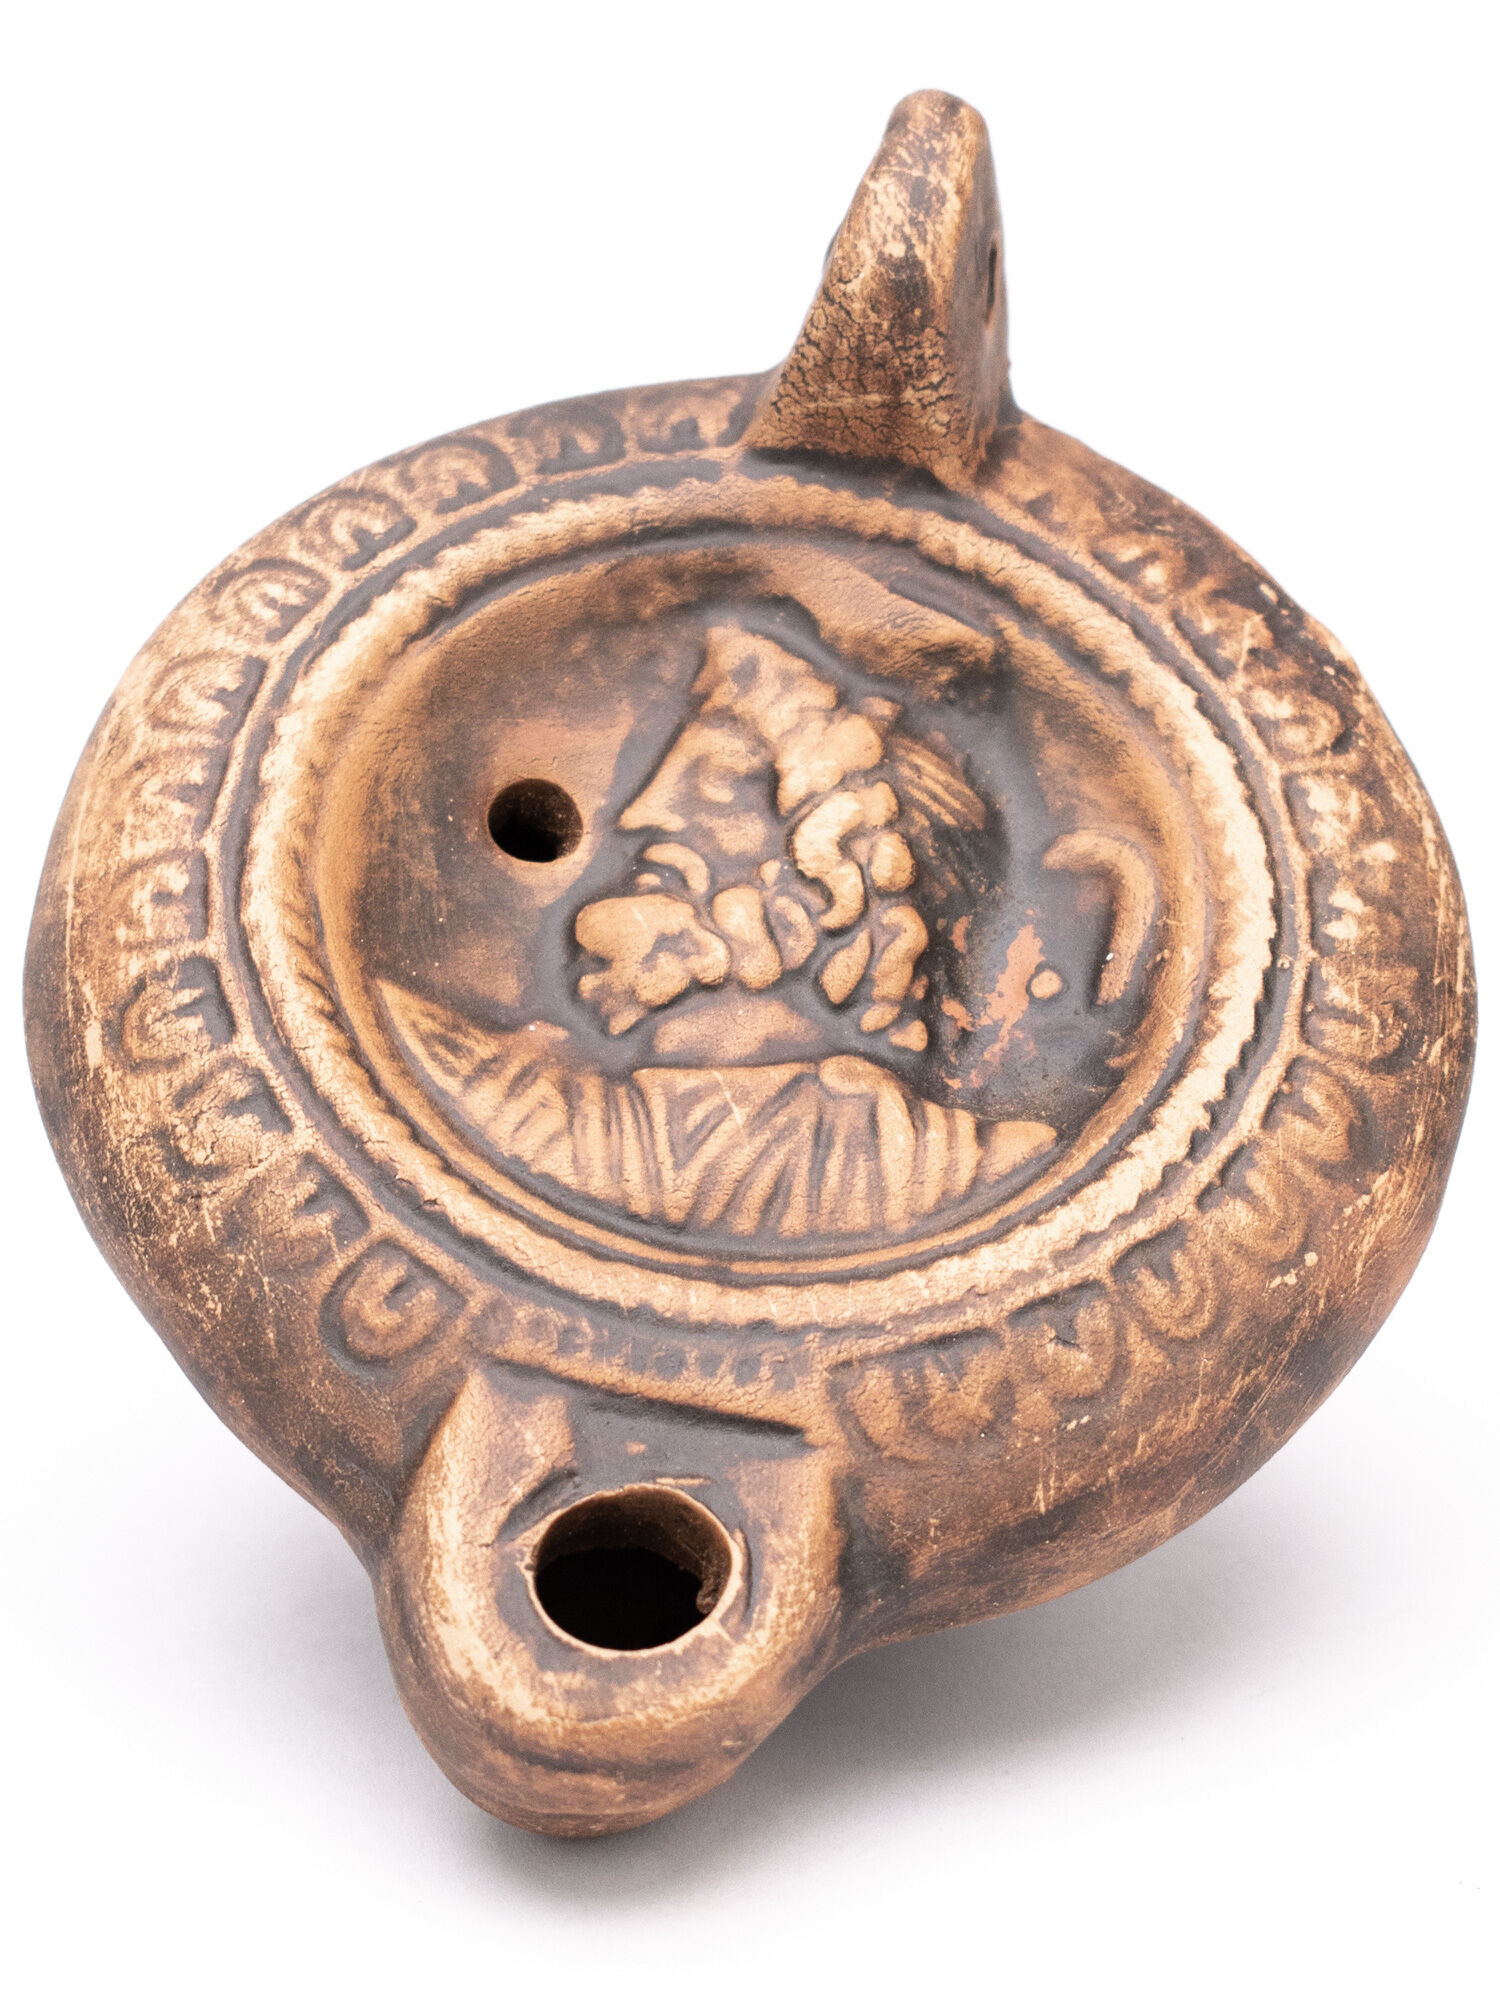 Romantik Lydighed pulsåre Oil lamp Serapis - The Romans